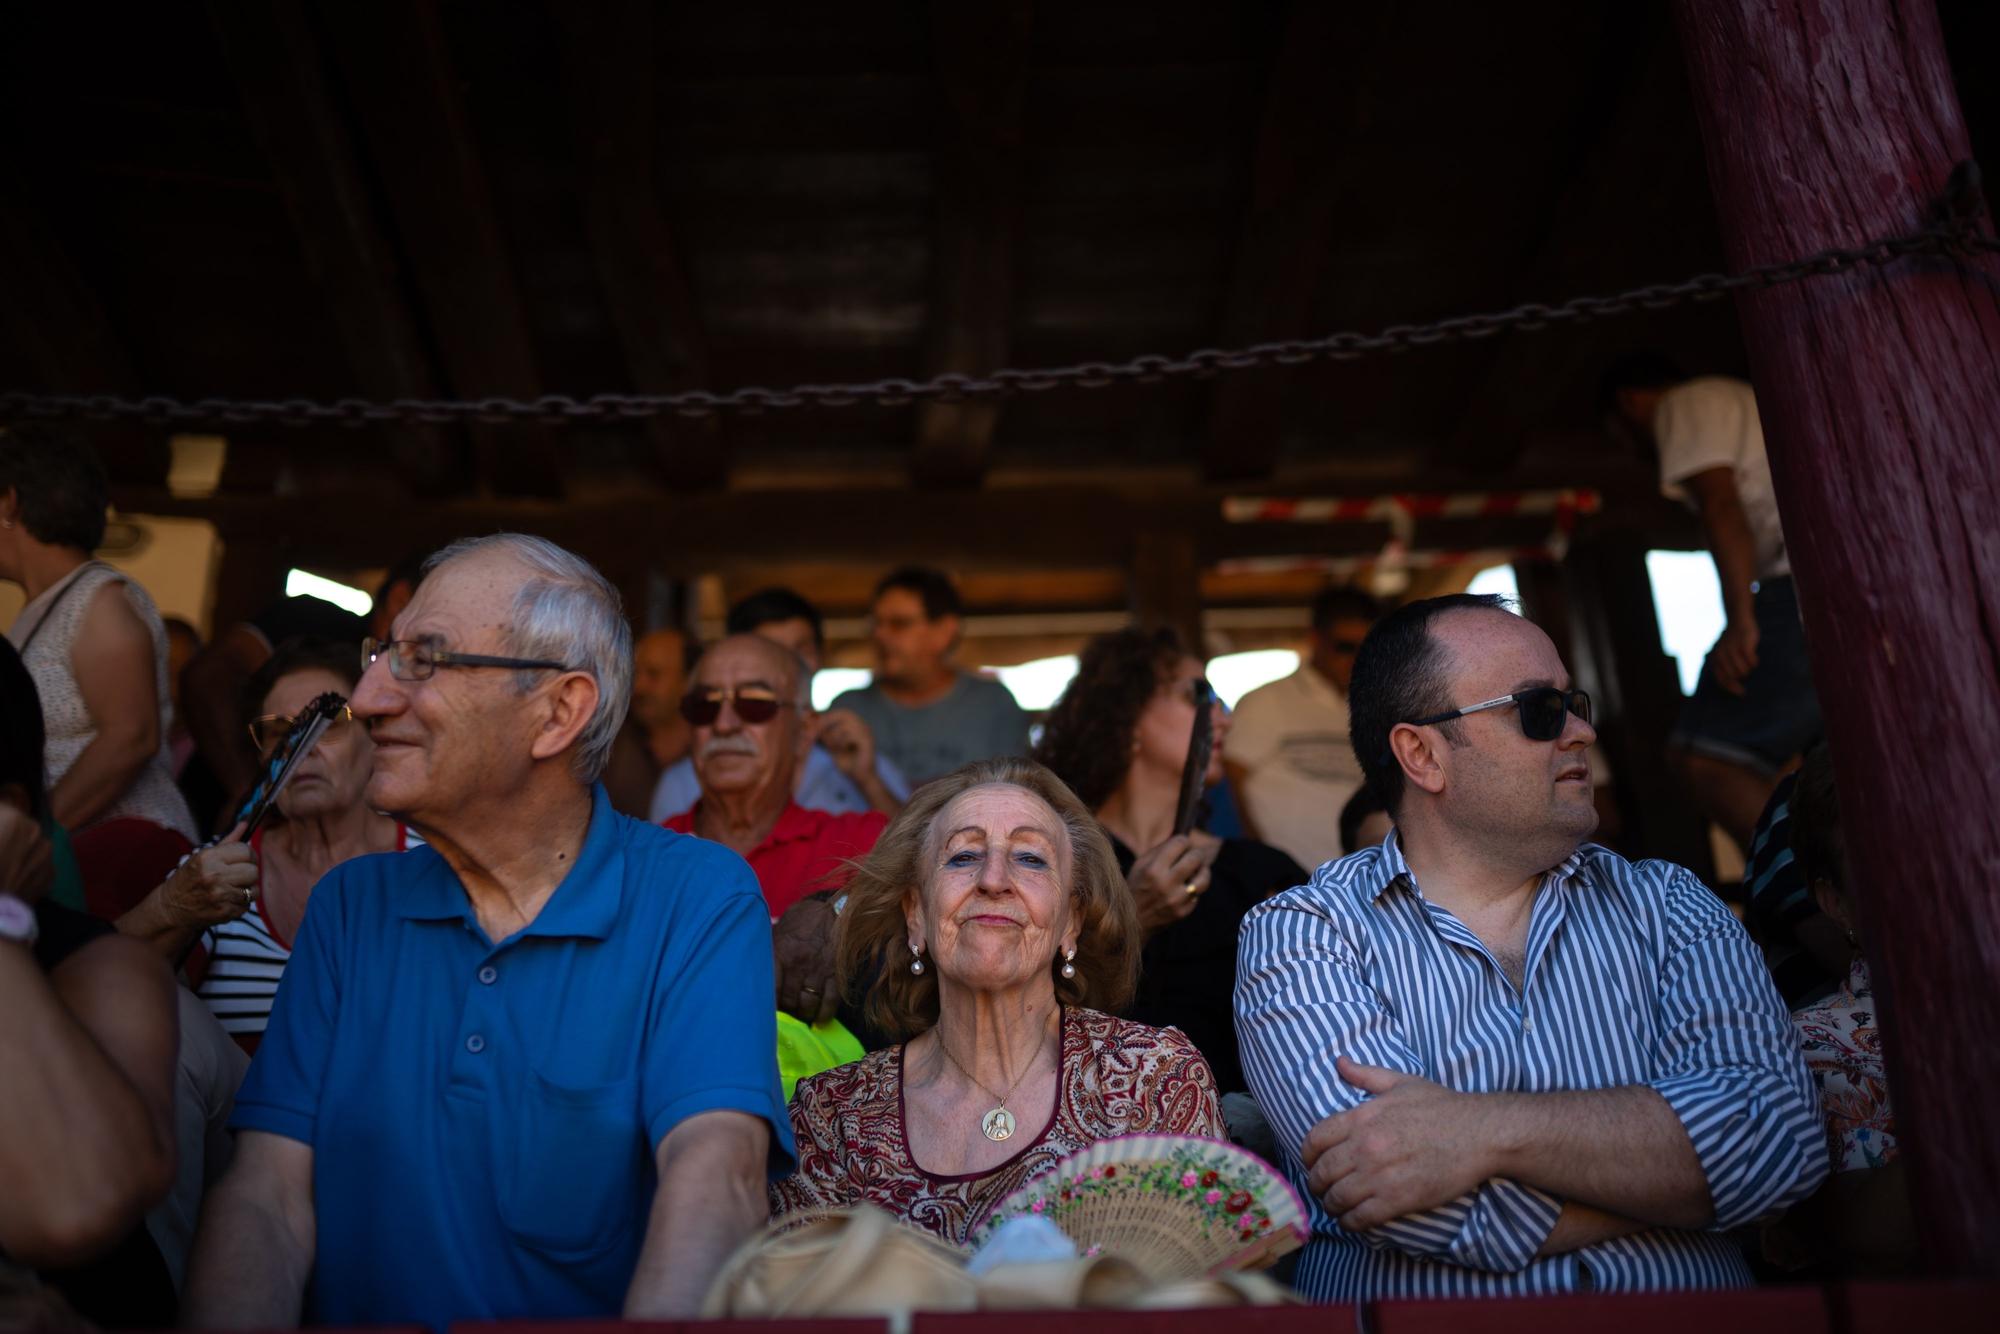 GALERÍA | La corrida de toros de las fiestas de San Agustín, en imágenes